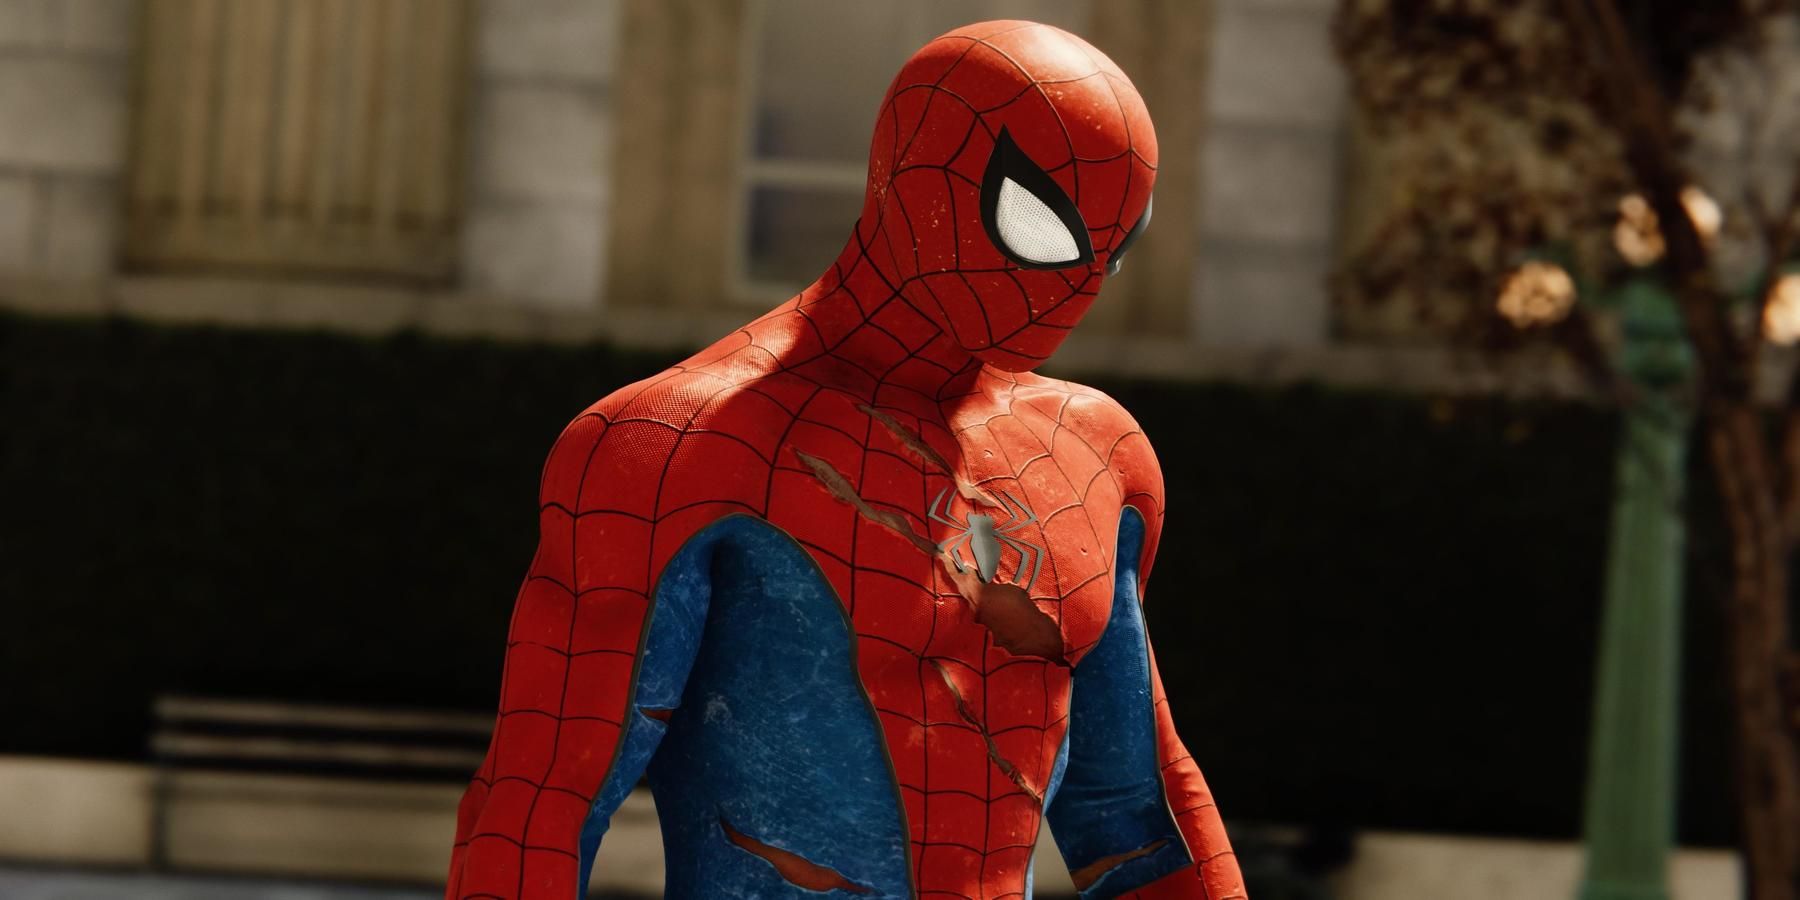 marvels-spider-man-damaged-suit